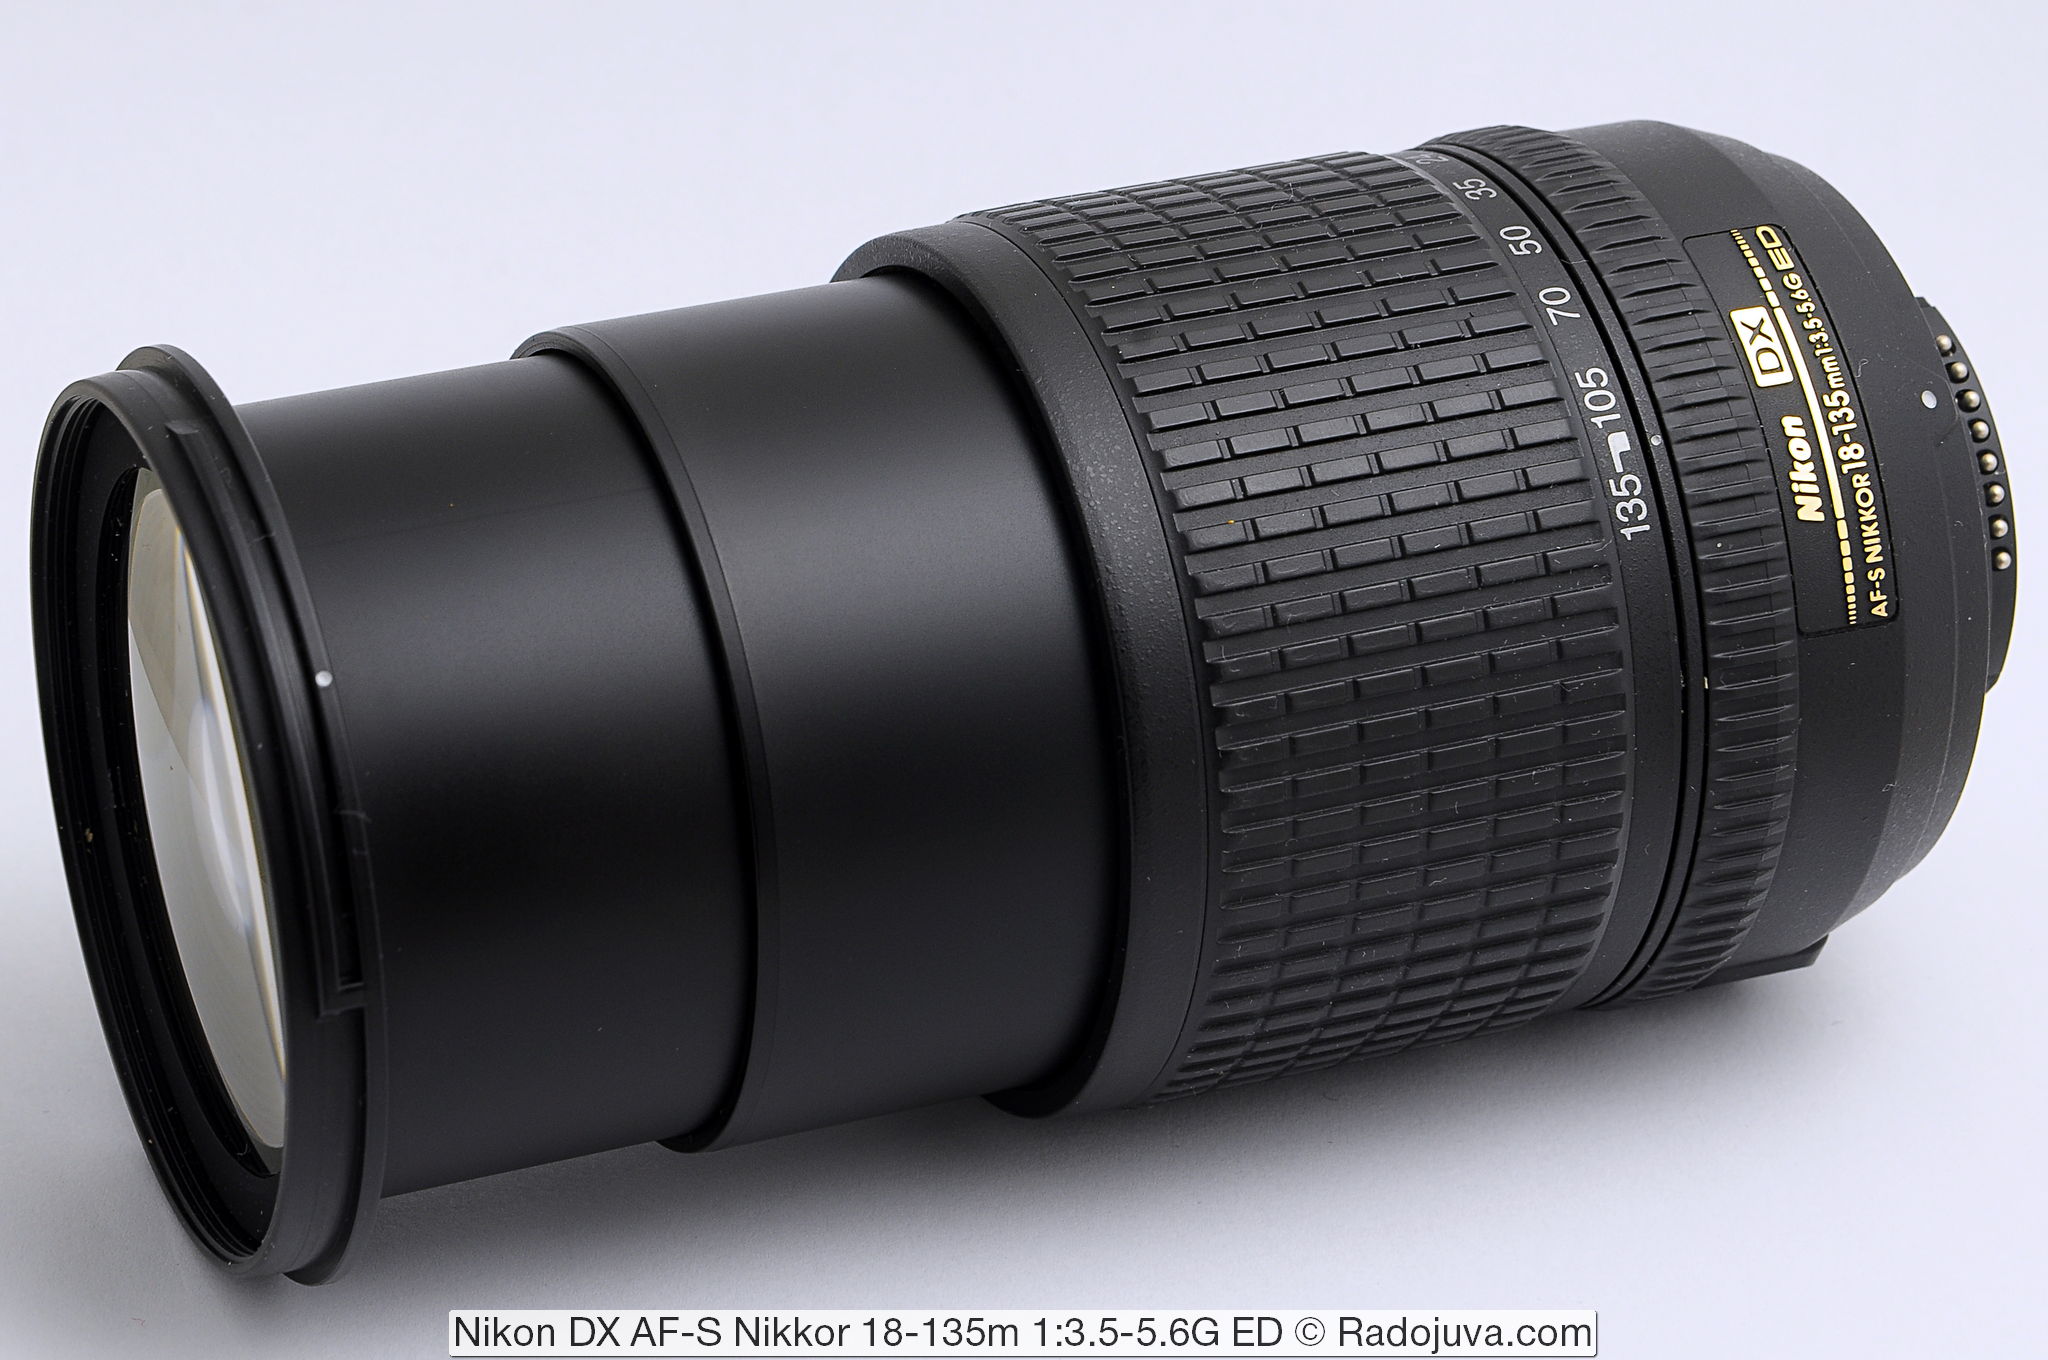 Nikon DX AF-S Nikkor 18-135m 1: 3.5-5.6G ED SWM IF Aspherical